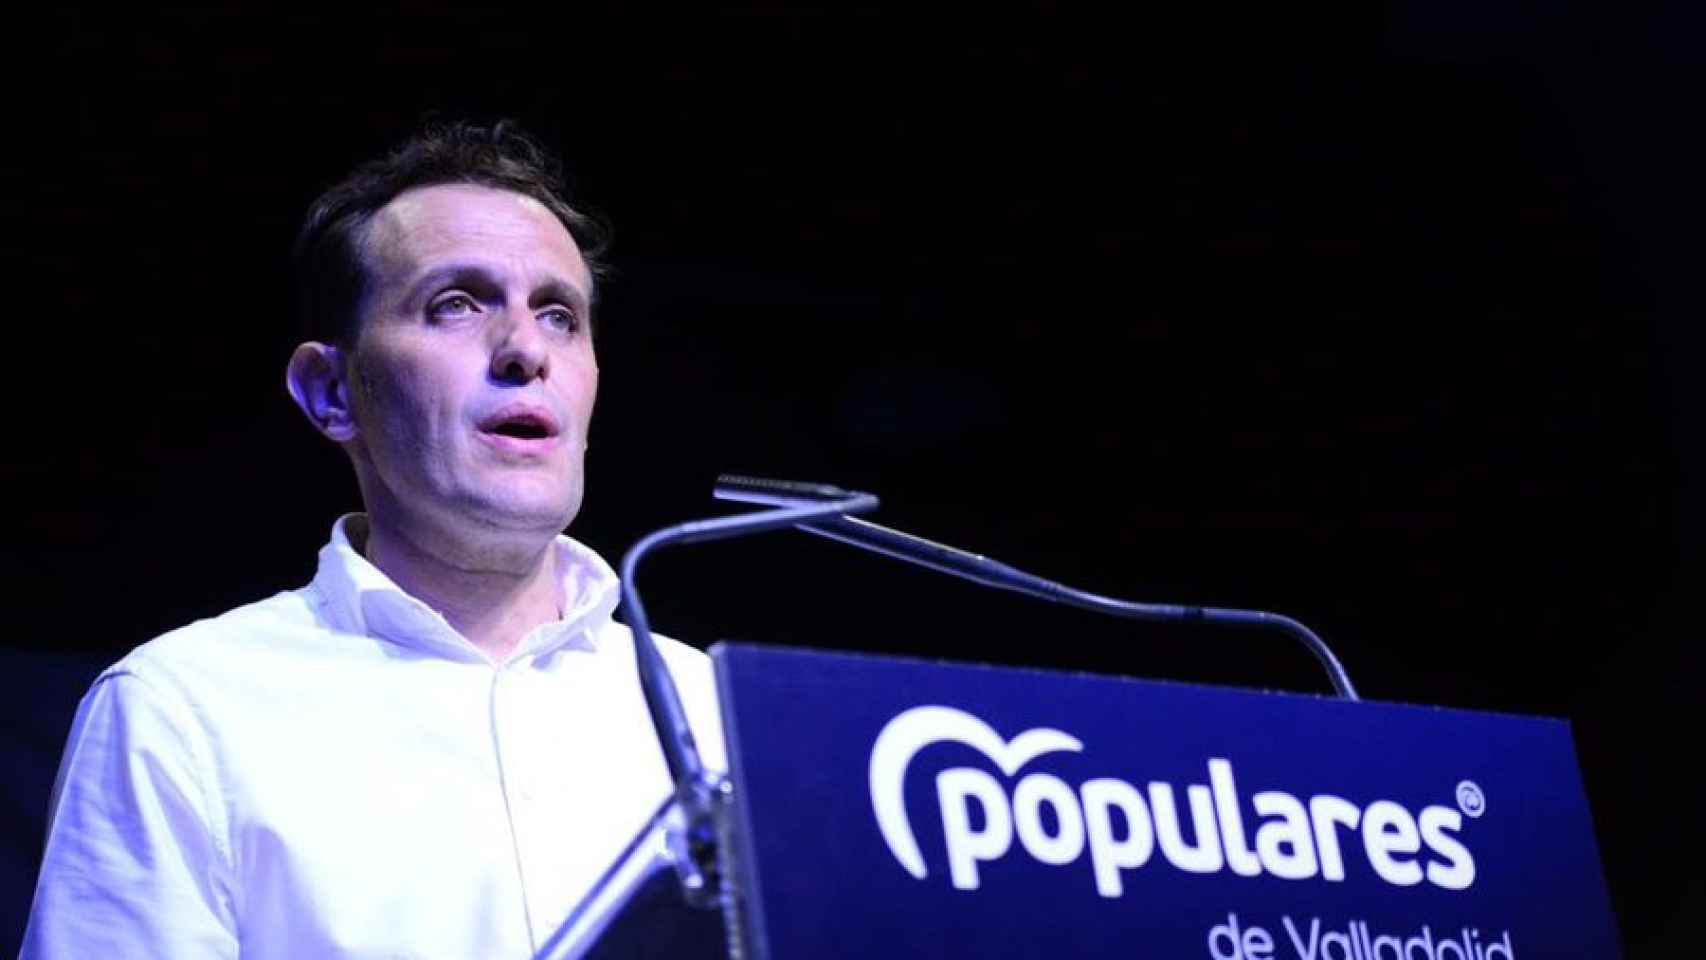 El presidente del PP en Valladolid, Conrado Íscar, durante un acto de campaña